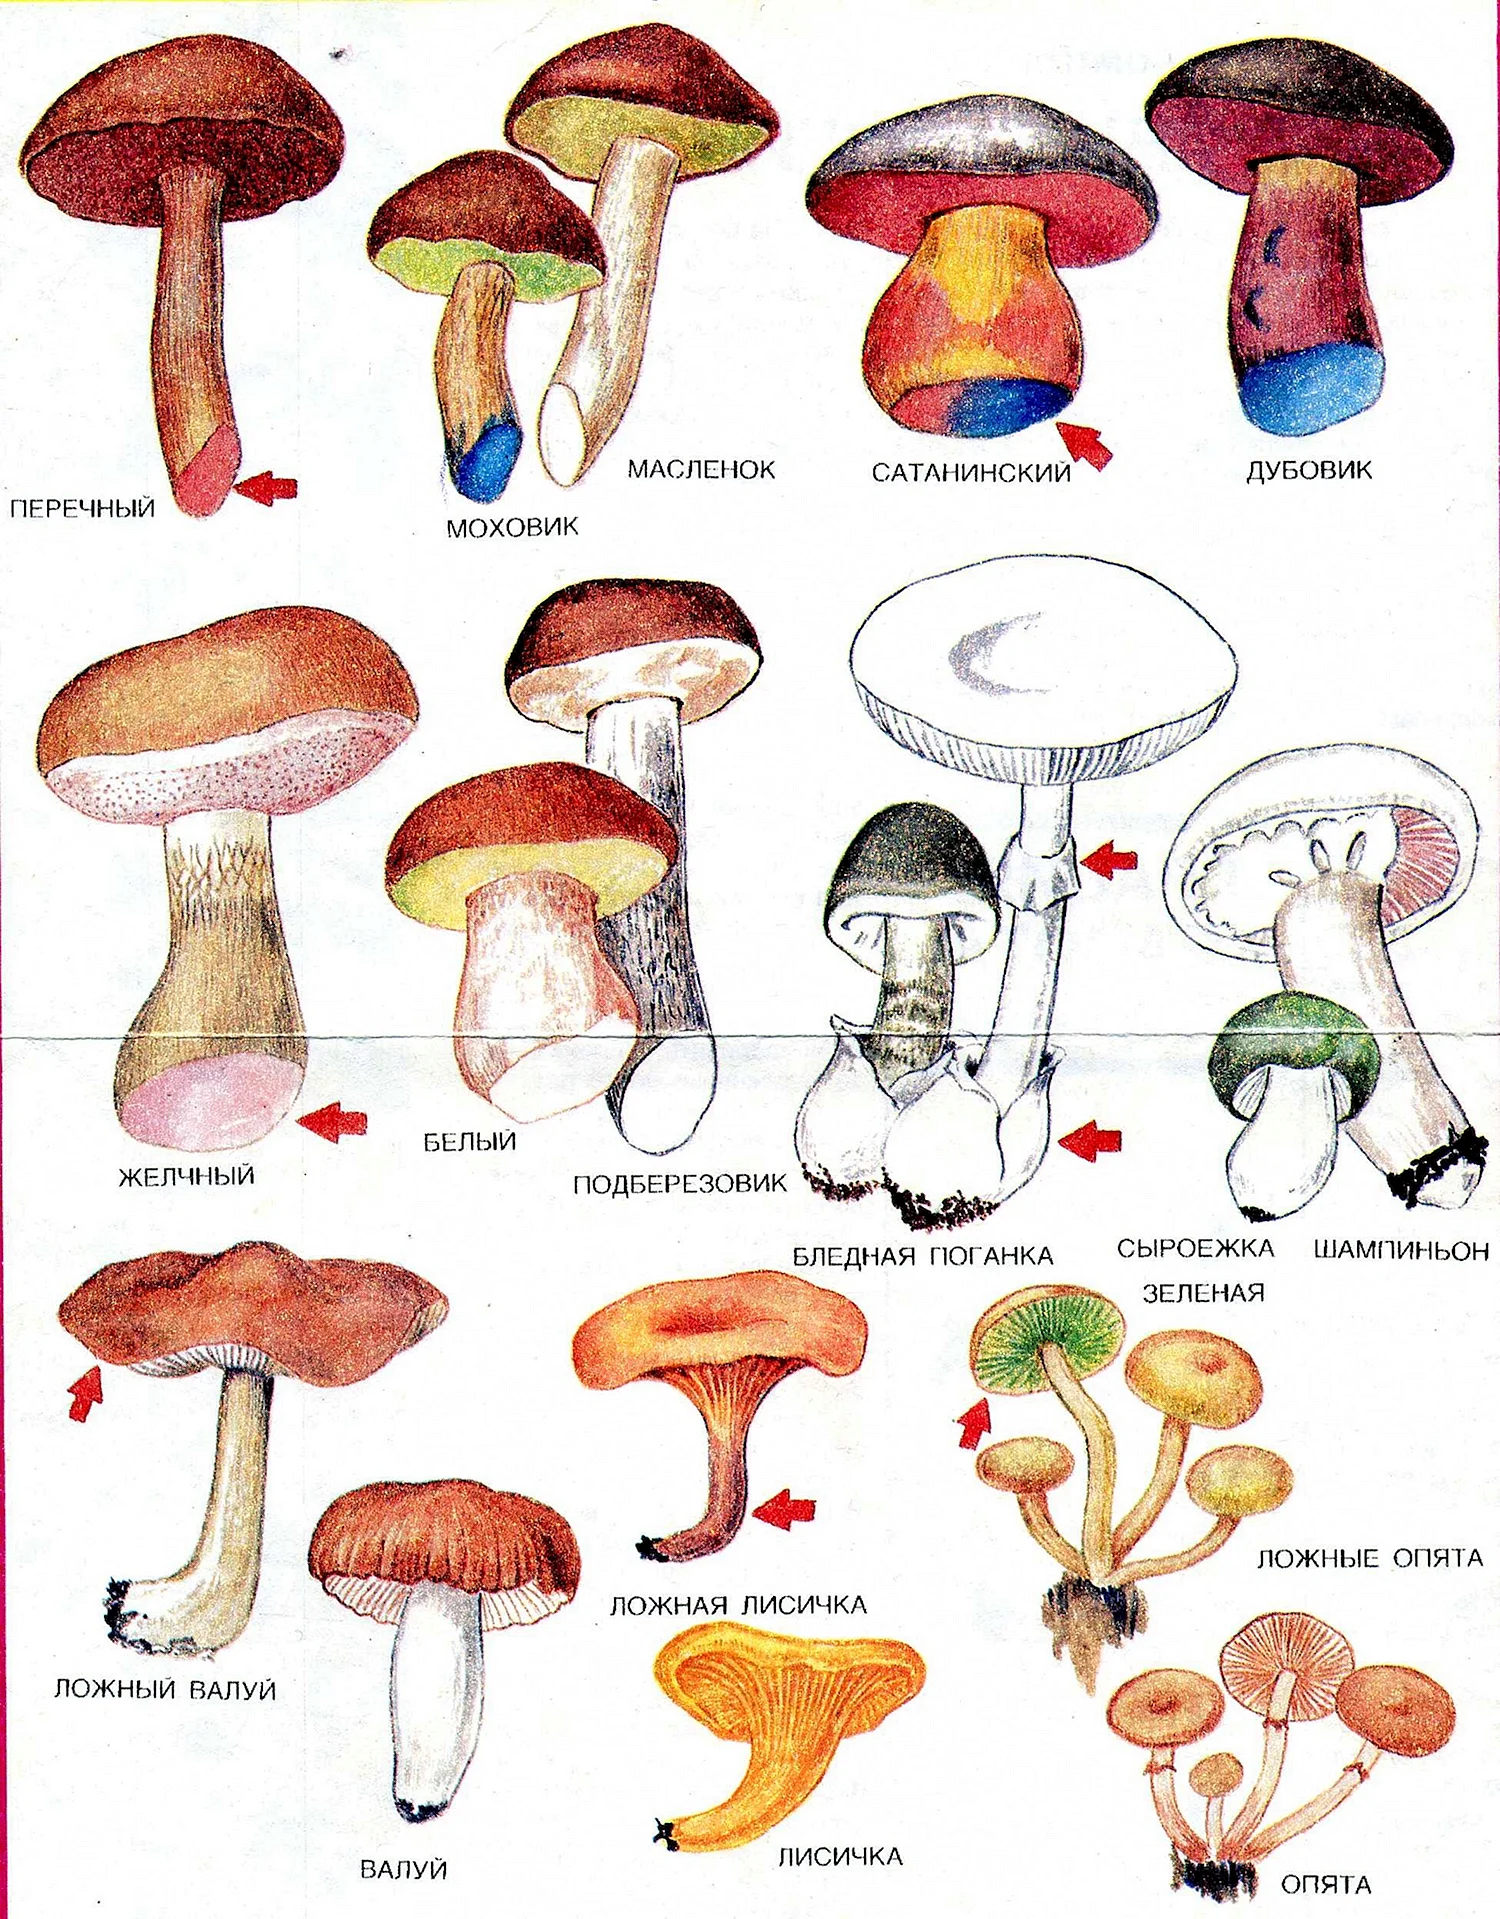 Грибы съедобные и несъедобные грибы и ядовитые грибы